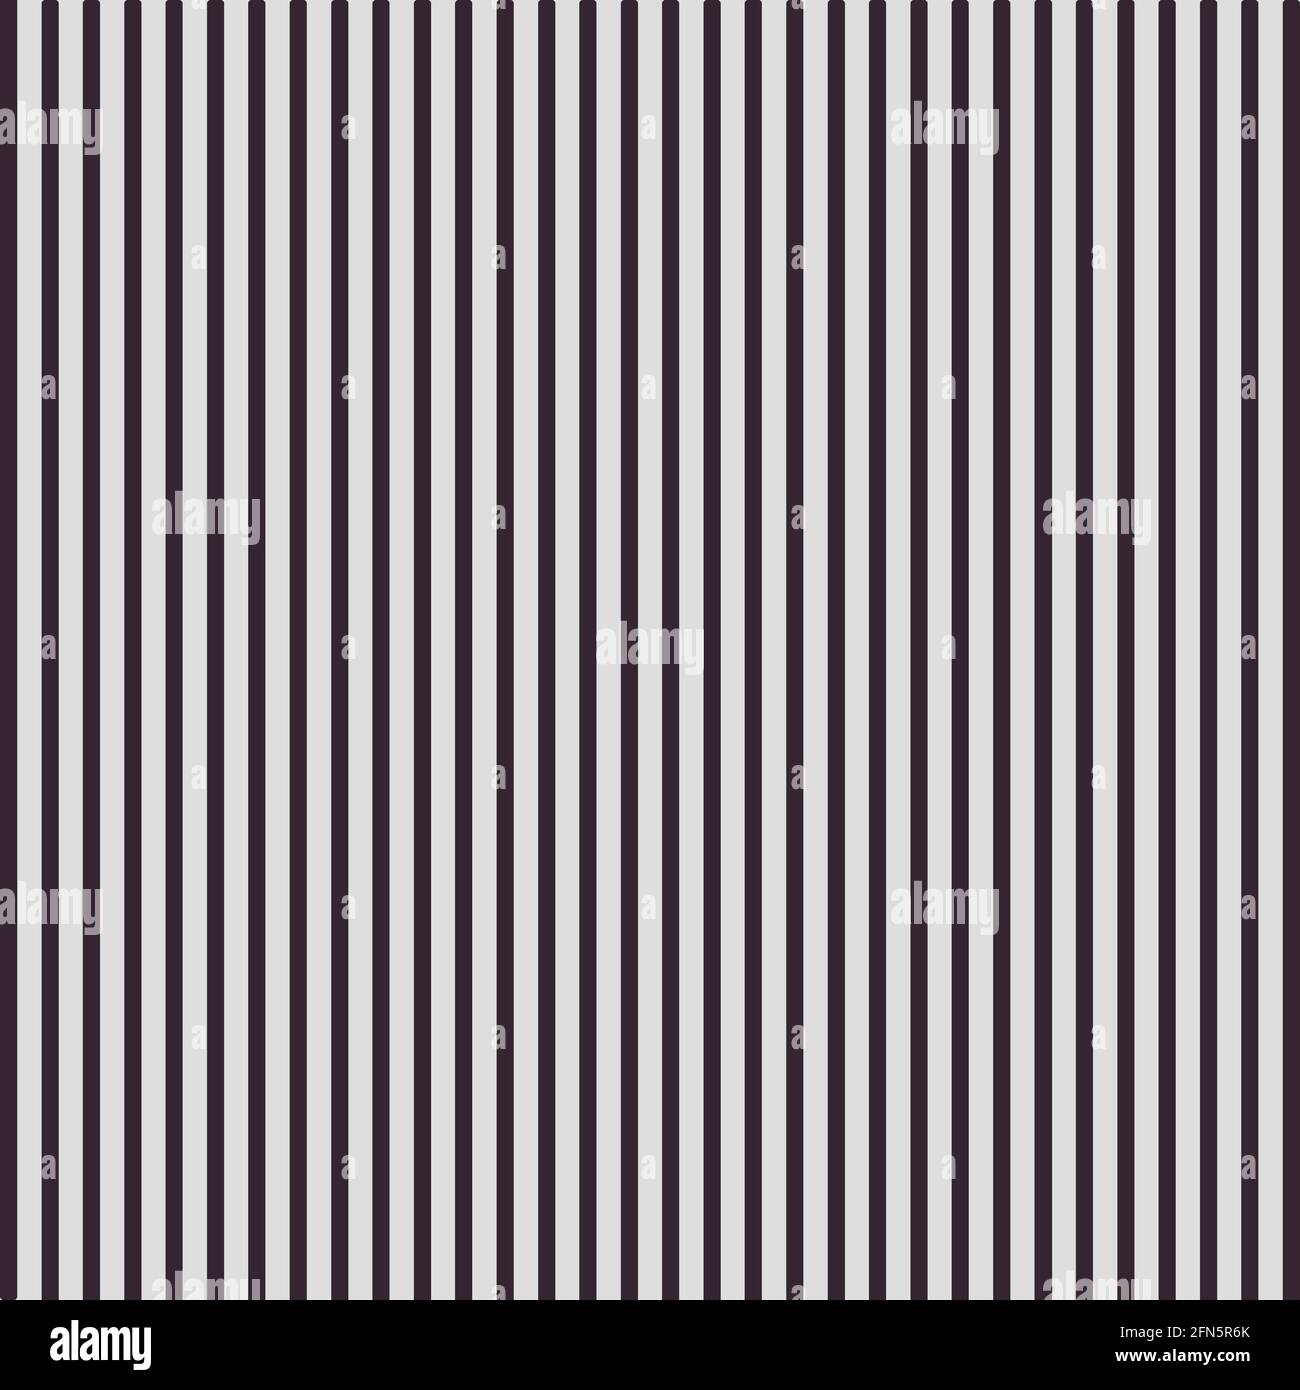 Motifs à rayures, fonds gris et brun-violet foncé avec lignes verticales. papier numérique 12x12 pour la conception graphique et les projets. Banque D'Images